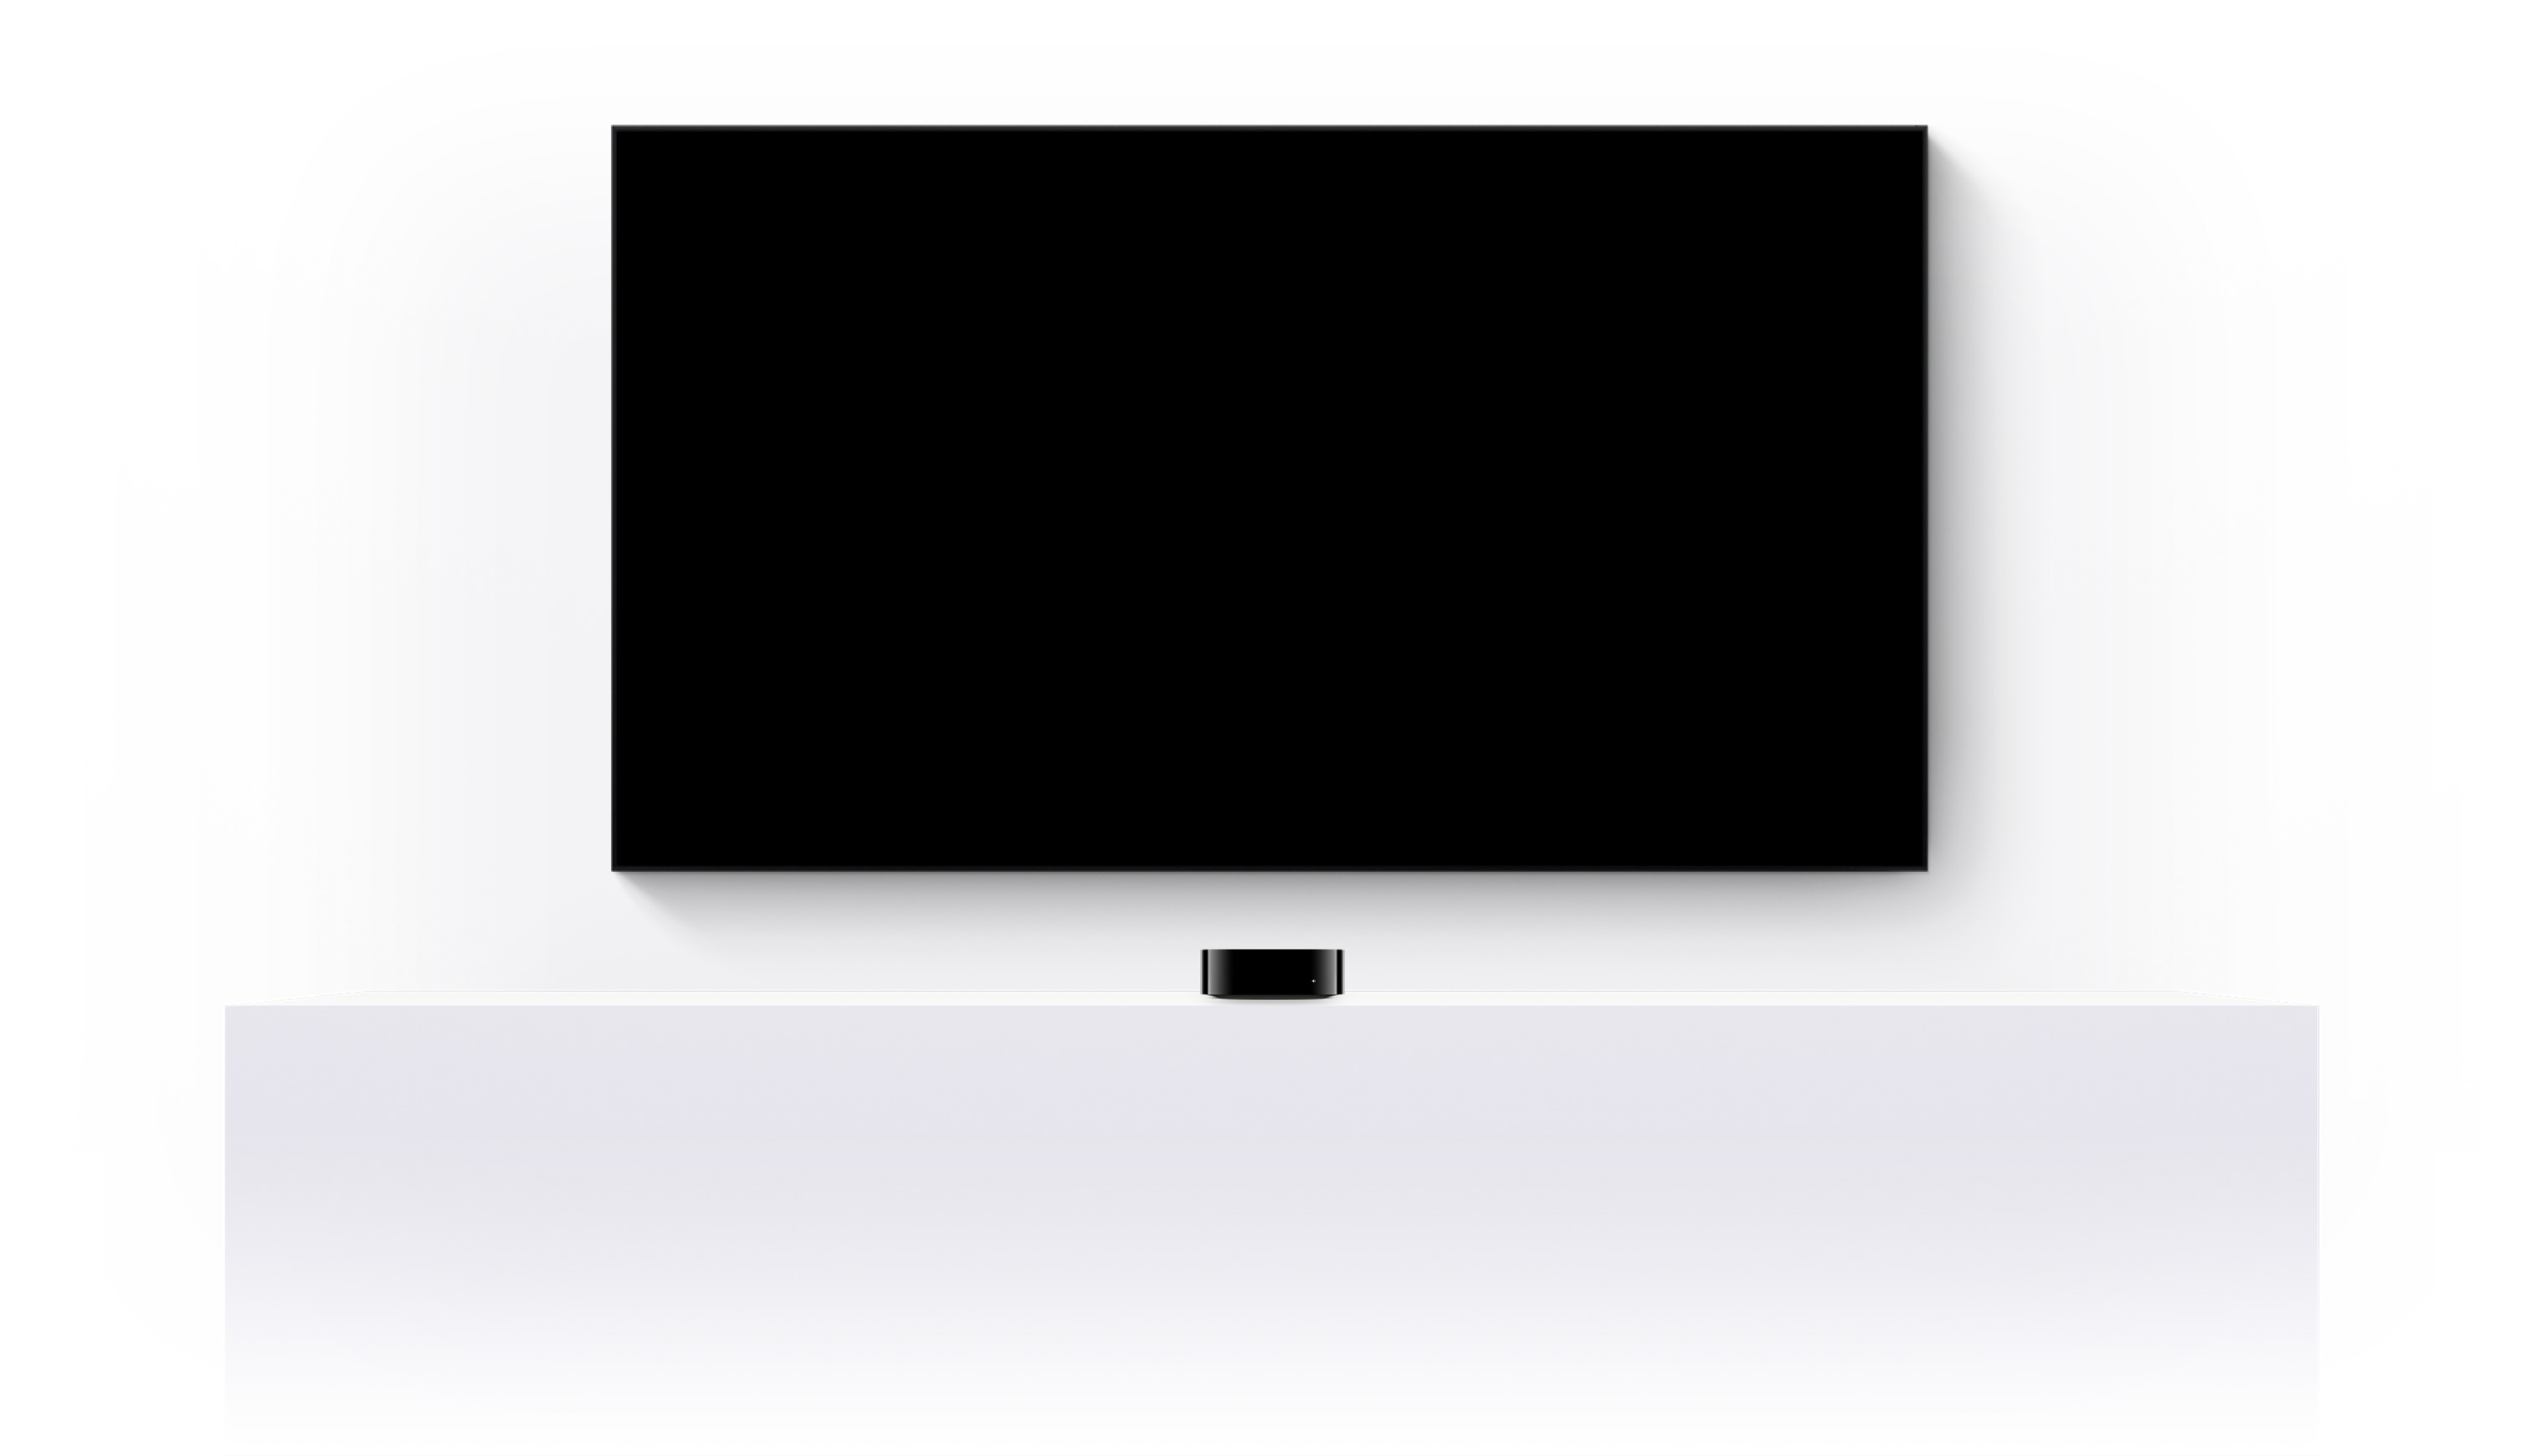 Apple TV 4k và một TV màn hình phẳng trình chiếu đoạn giới thiệu được dựng về các bộ phim và chương trình Apple TV+